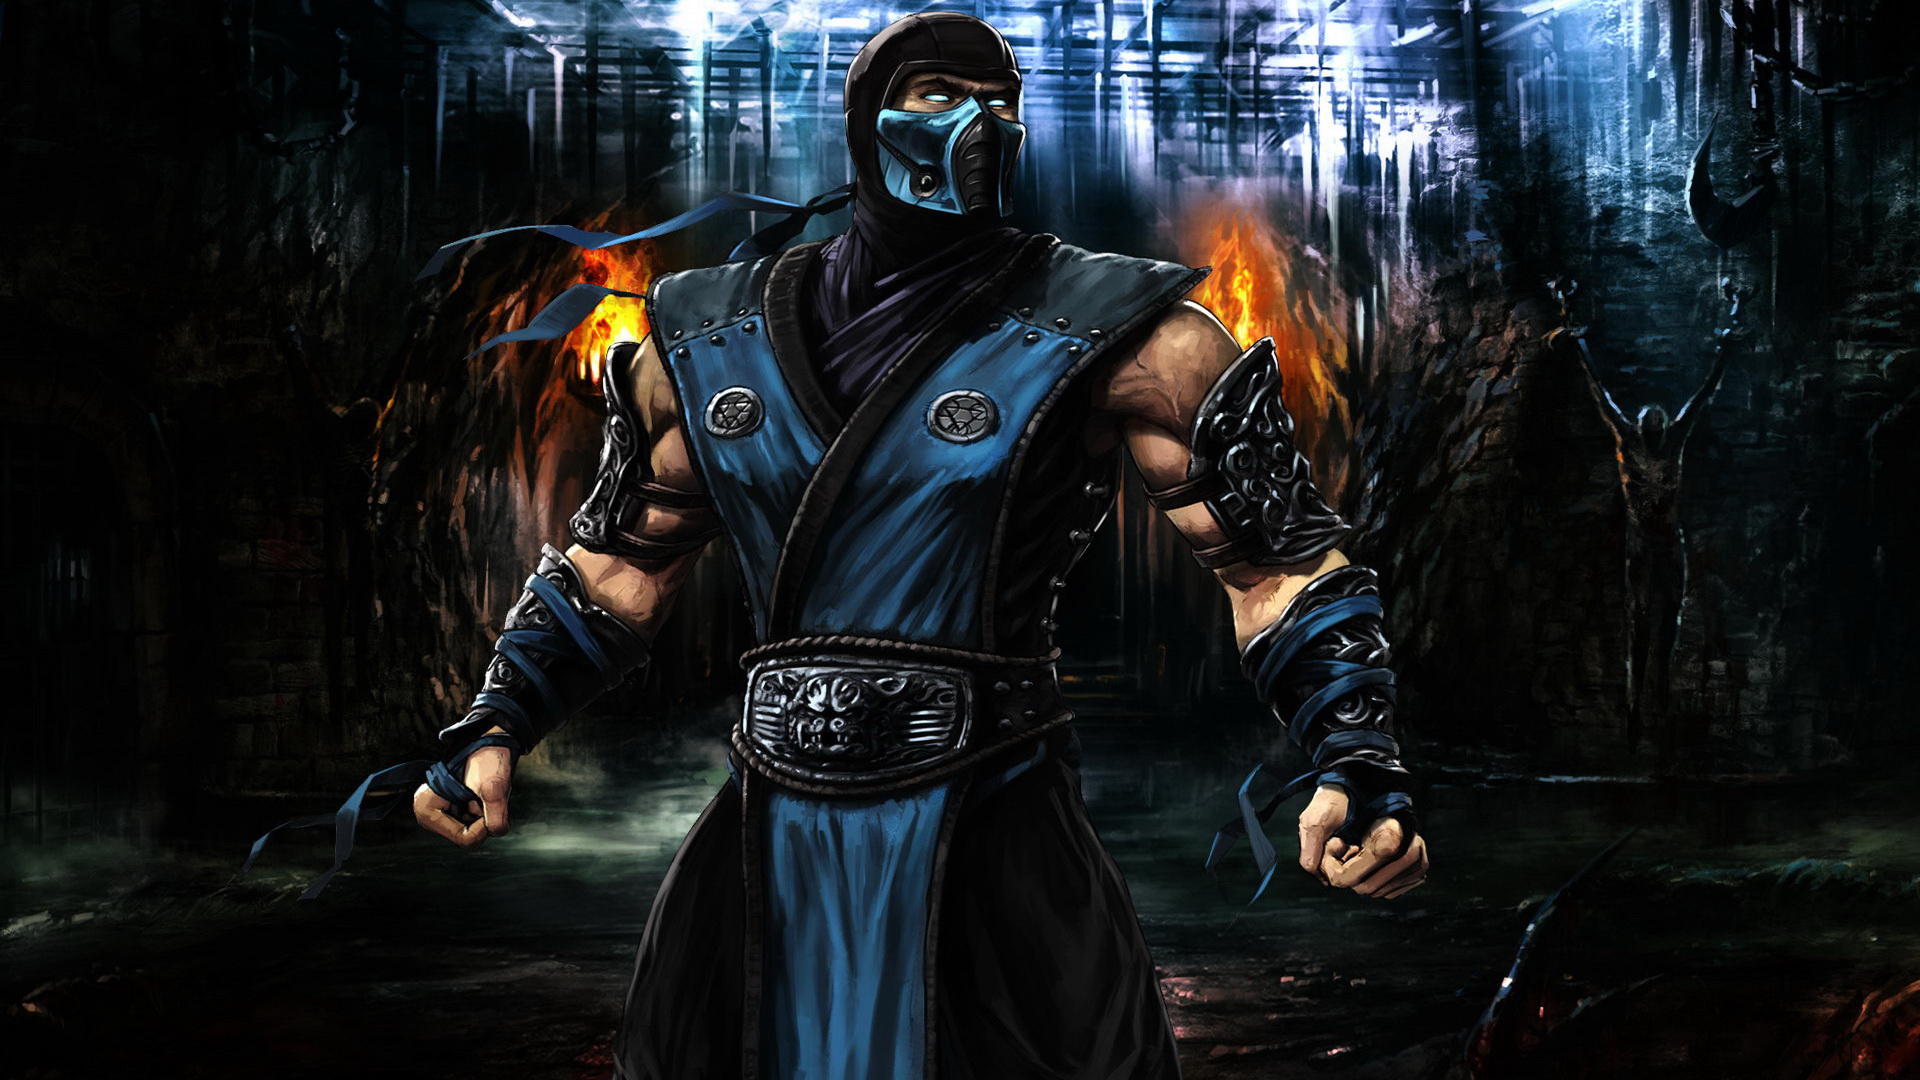 Mortal Kombat Mythologies: Sub-Zero Details - LaunchBox ...